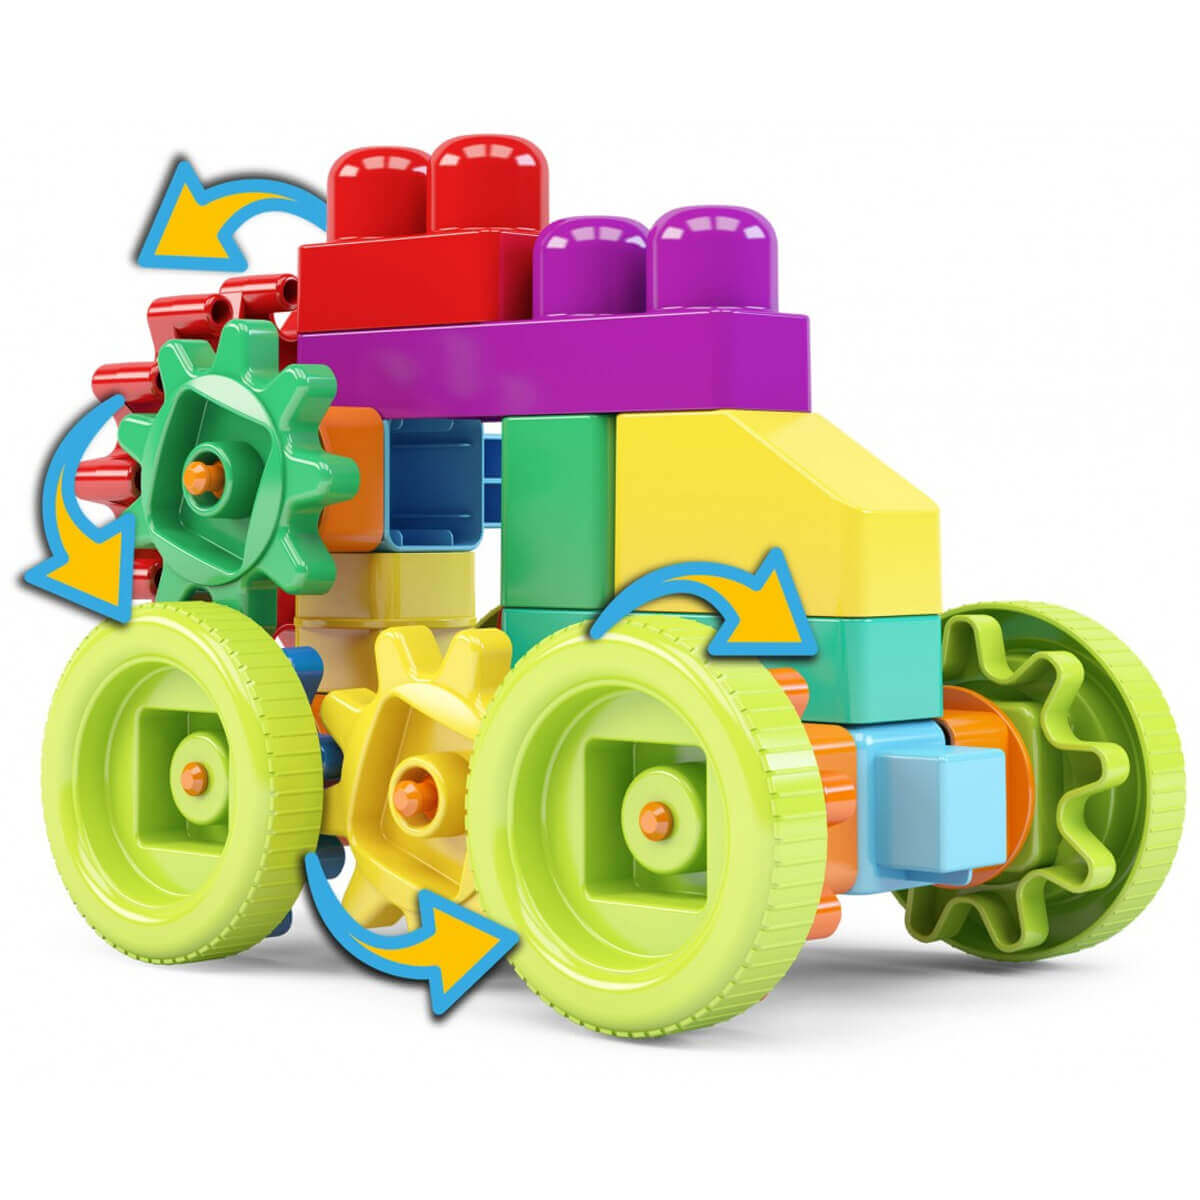 250 Multiblocos-Educativos-Fácil De Montar-Peças  Diversificadas-Colorida-Brinquedo tipo Lego em Promoção na Americanas